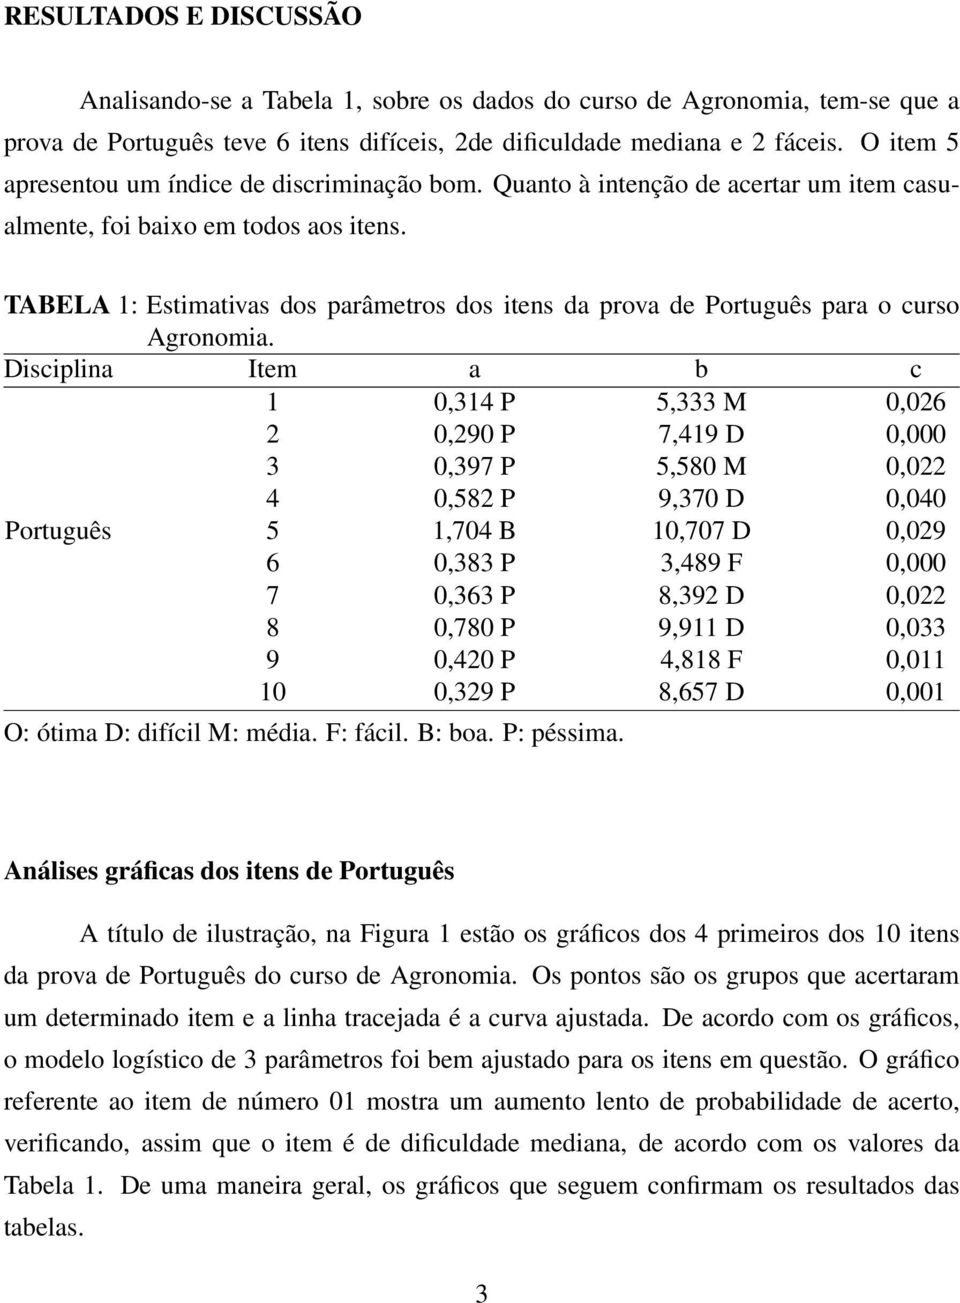 TABELA 1: Estimativas dos parâmetros dos itens da prova de Português para o curso Agronomia.